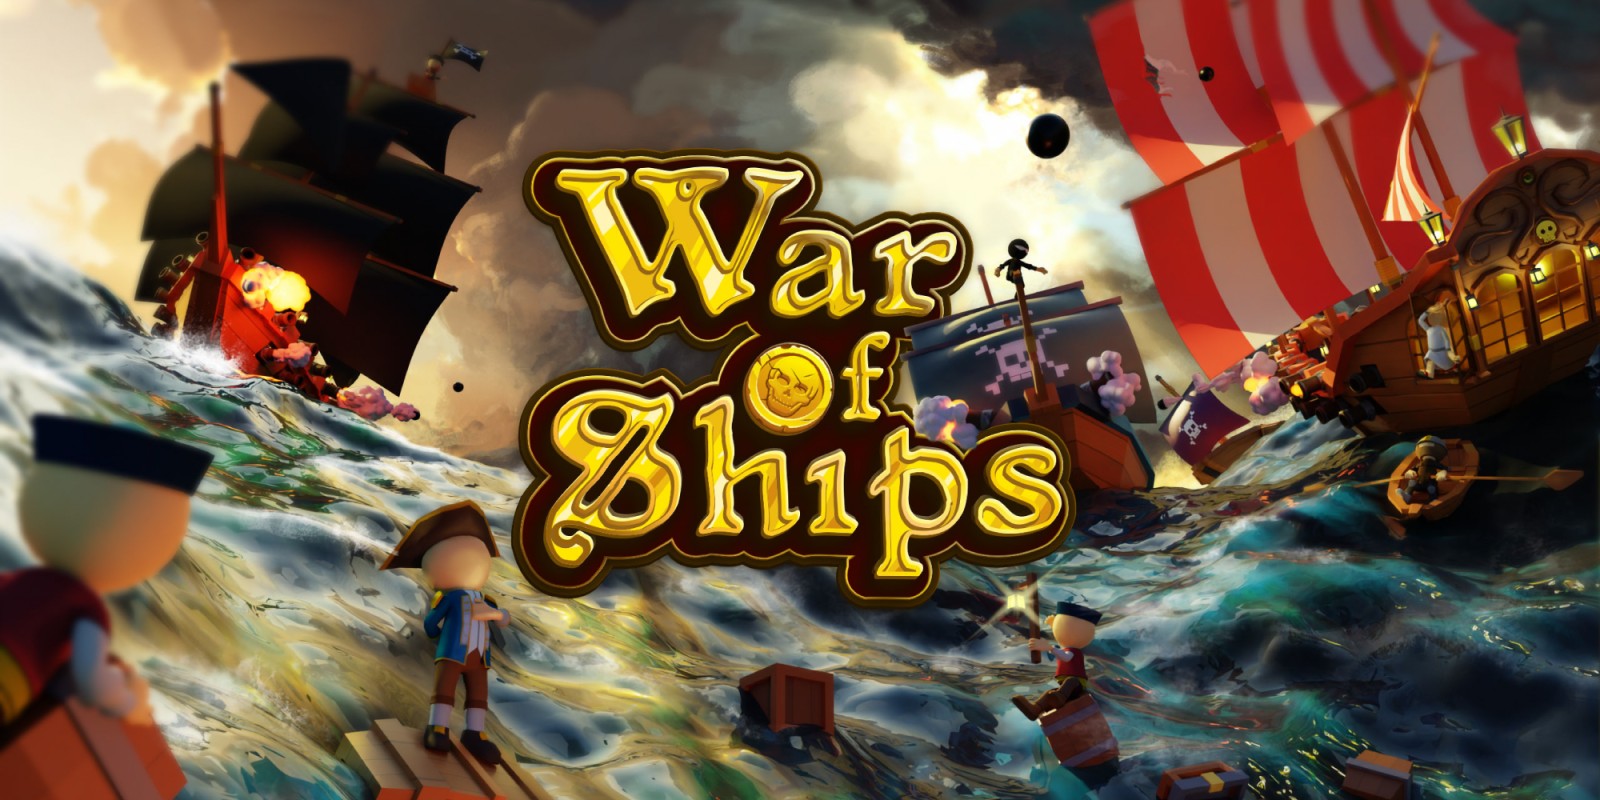 War of Ships